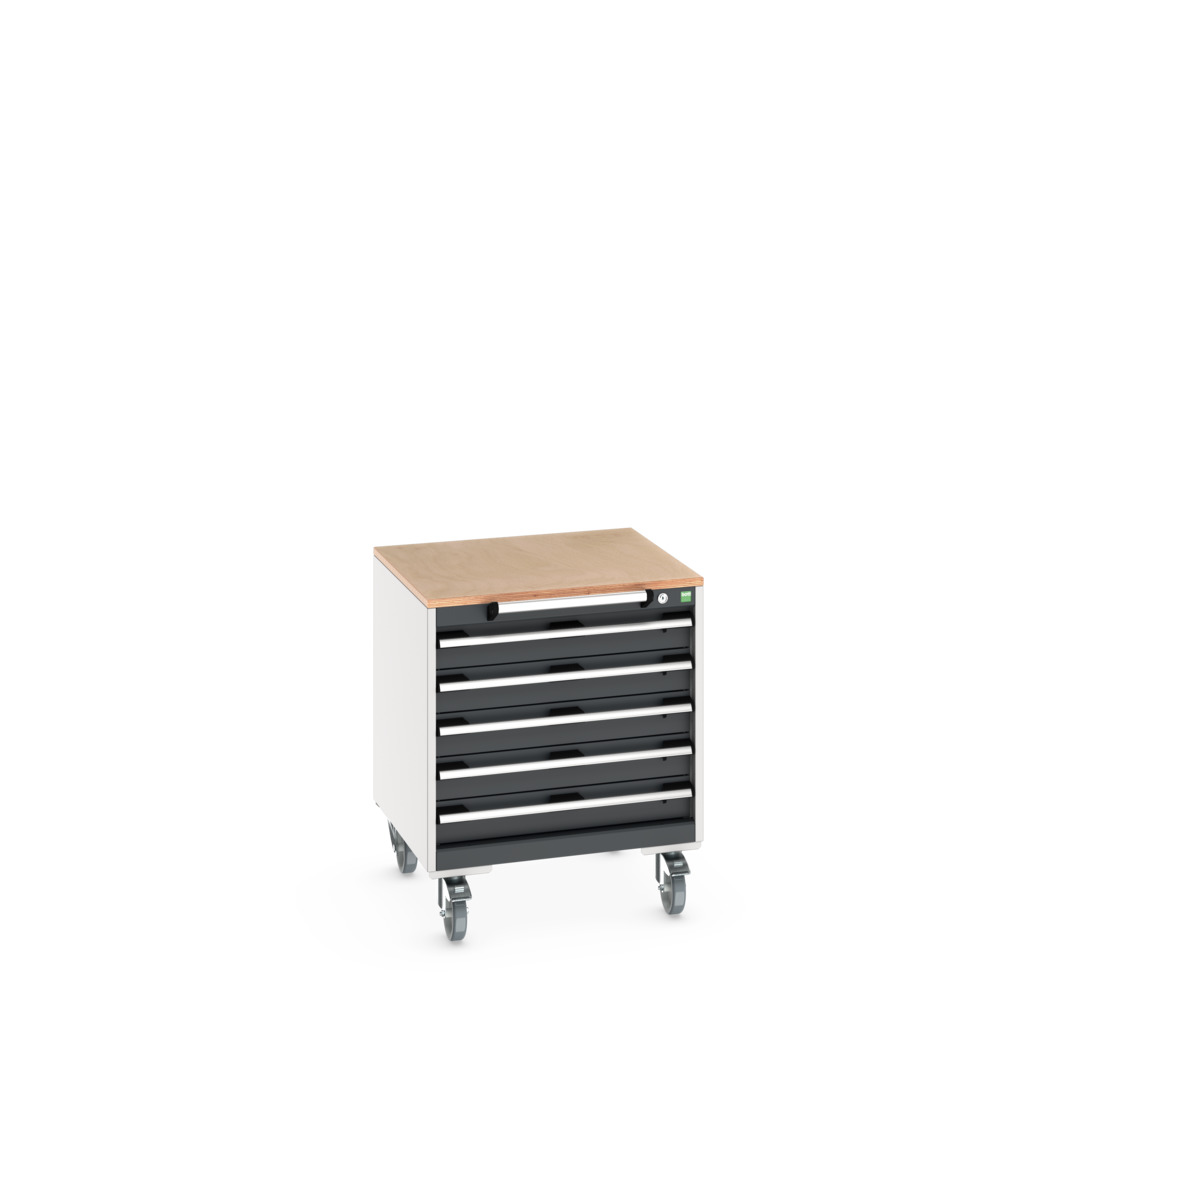 40402145. - cubio mobile cabinet